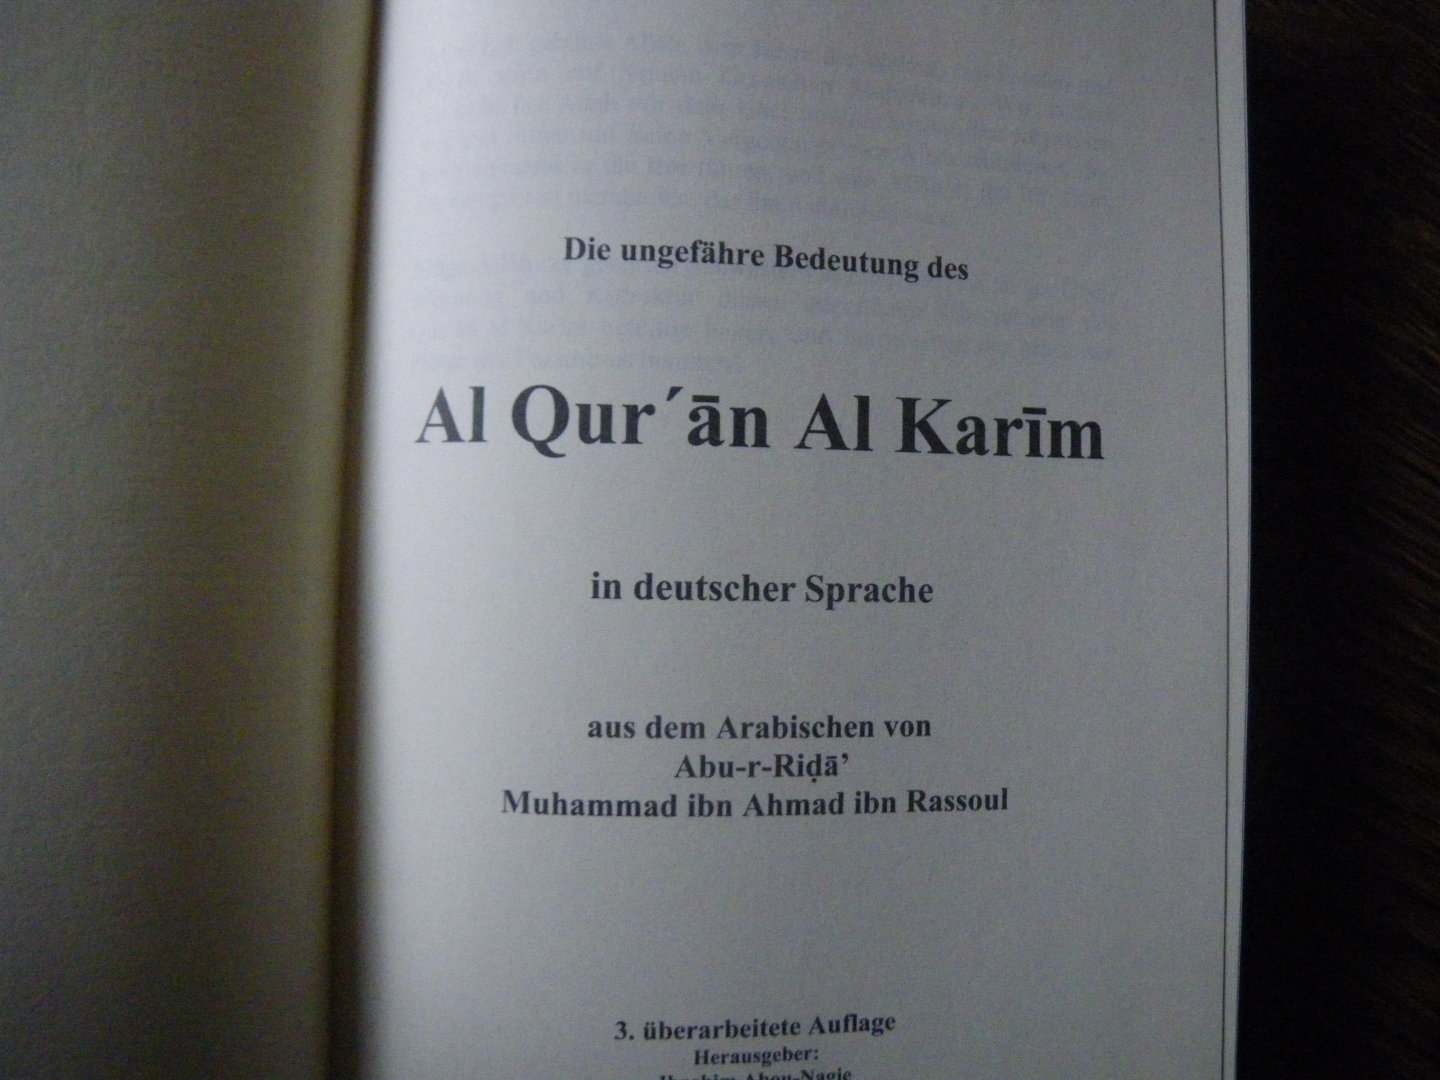 Abu-r-Rida` Muhammad ibn Ahmad ibn Rassoul - Die ungefähre Bedeutung des Al-Qur'an /Al-Karim in deutscher Sprache